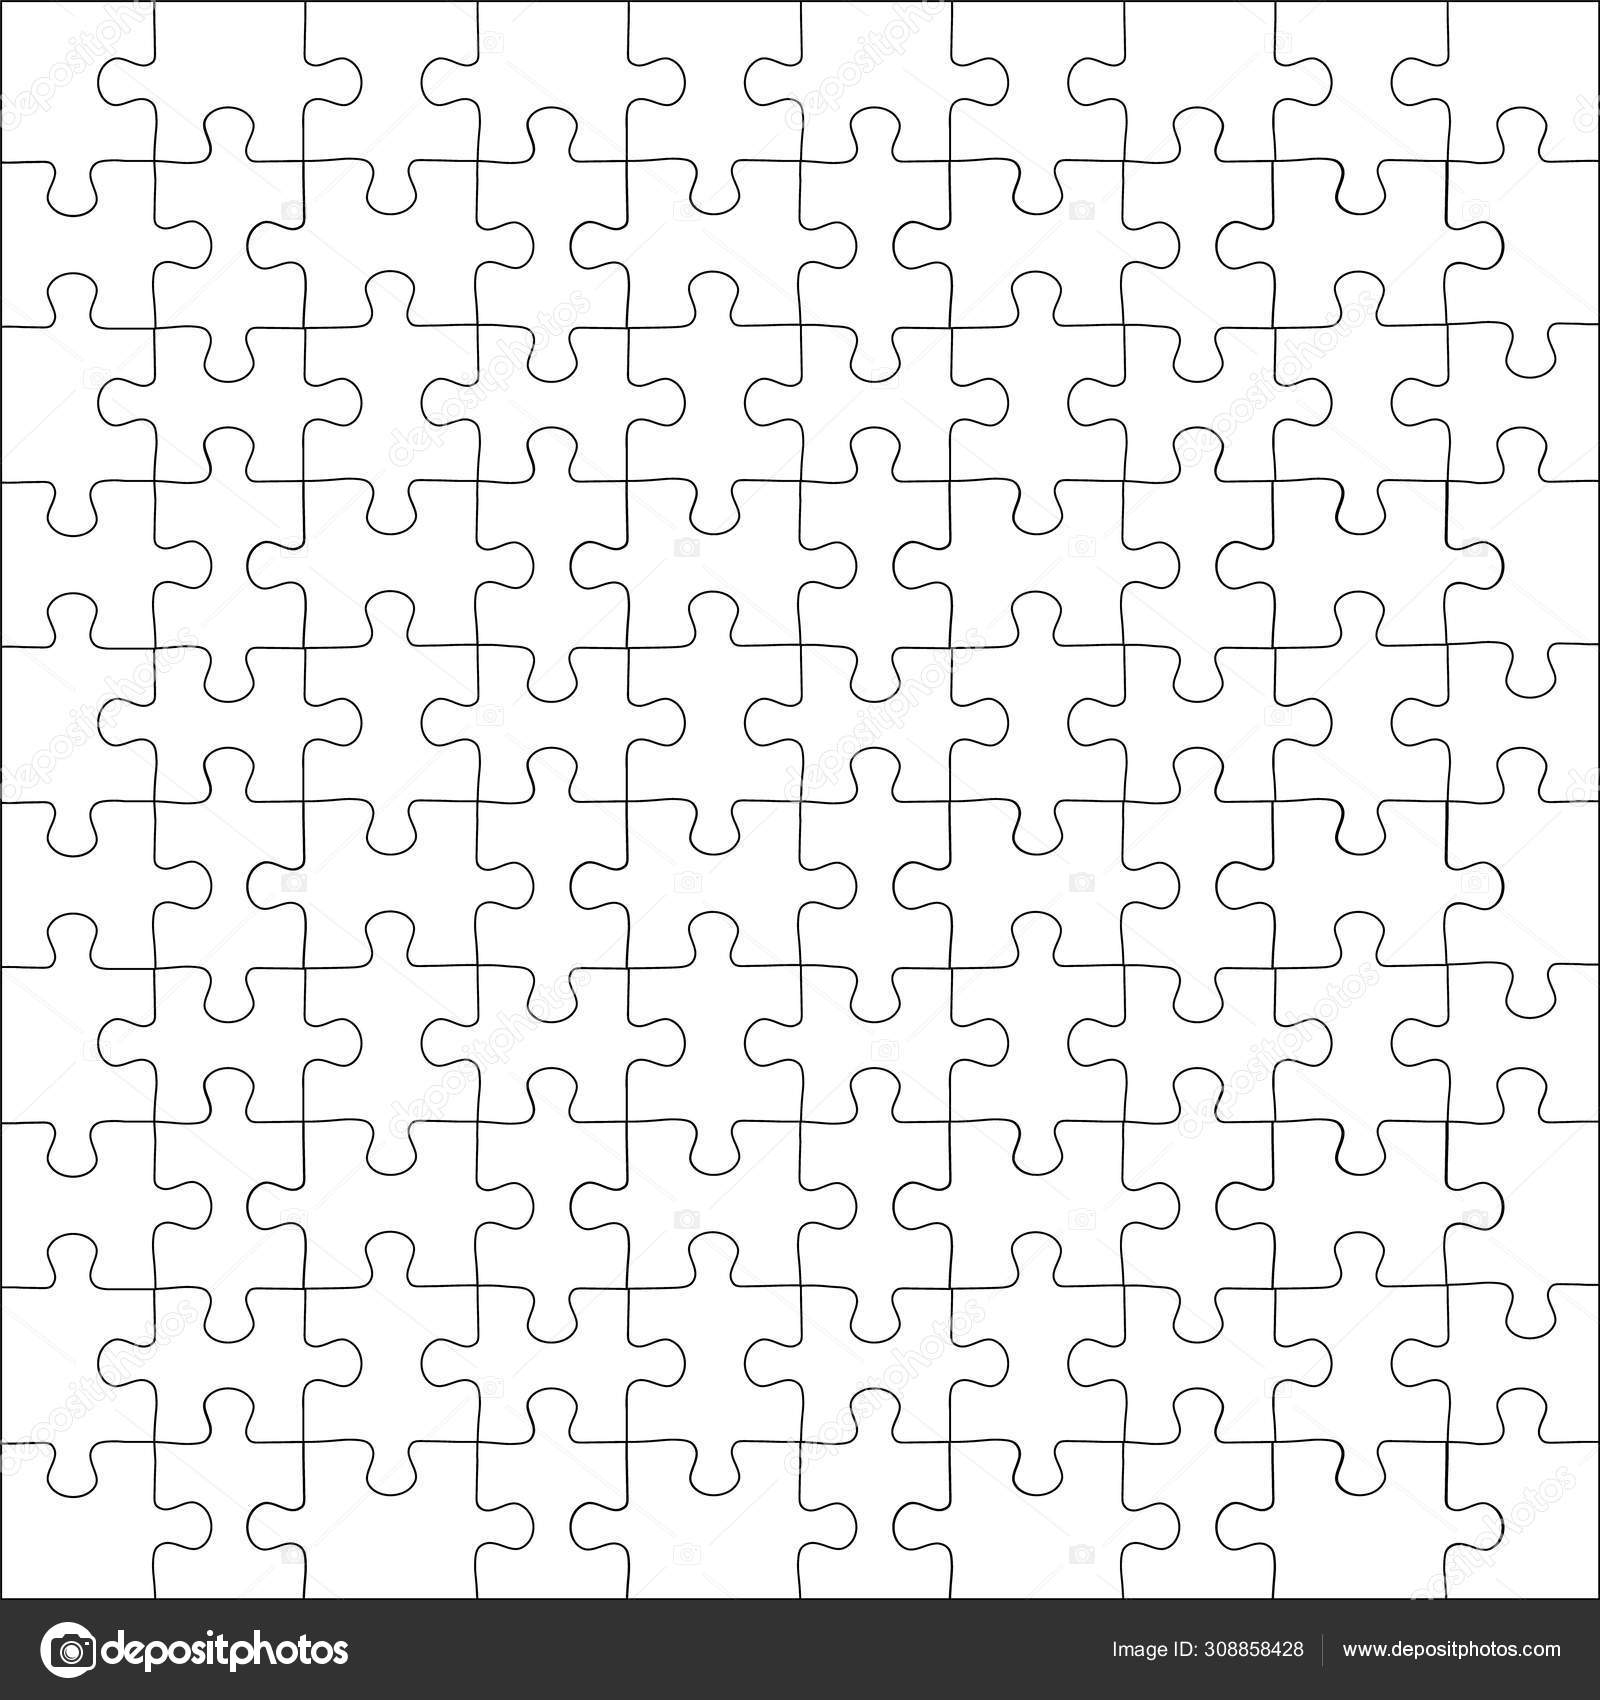 schlummer-untertasse-angehen-puzzle-grid-template-sonnenfinsternis